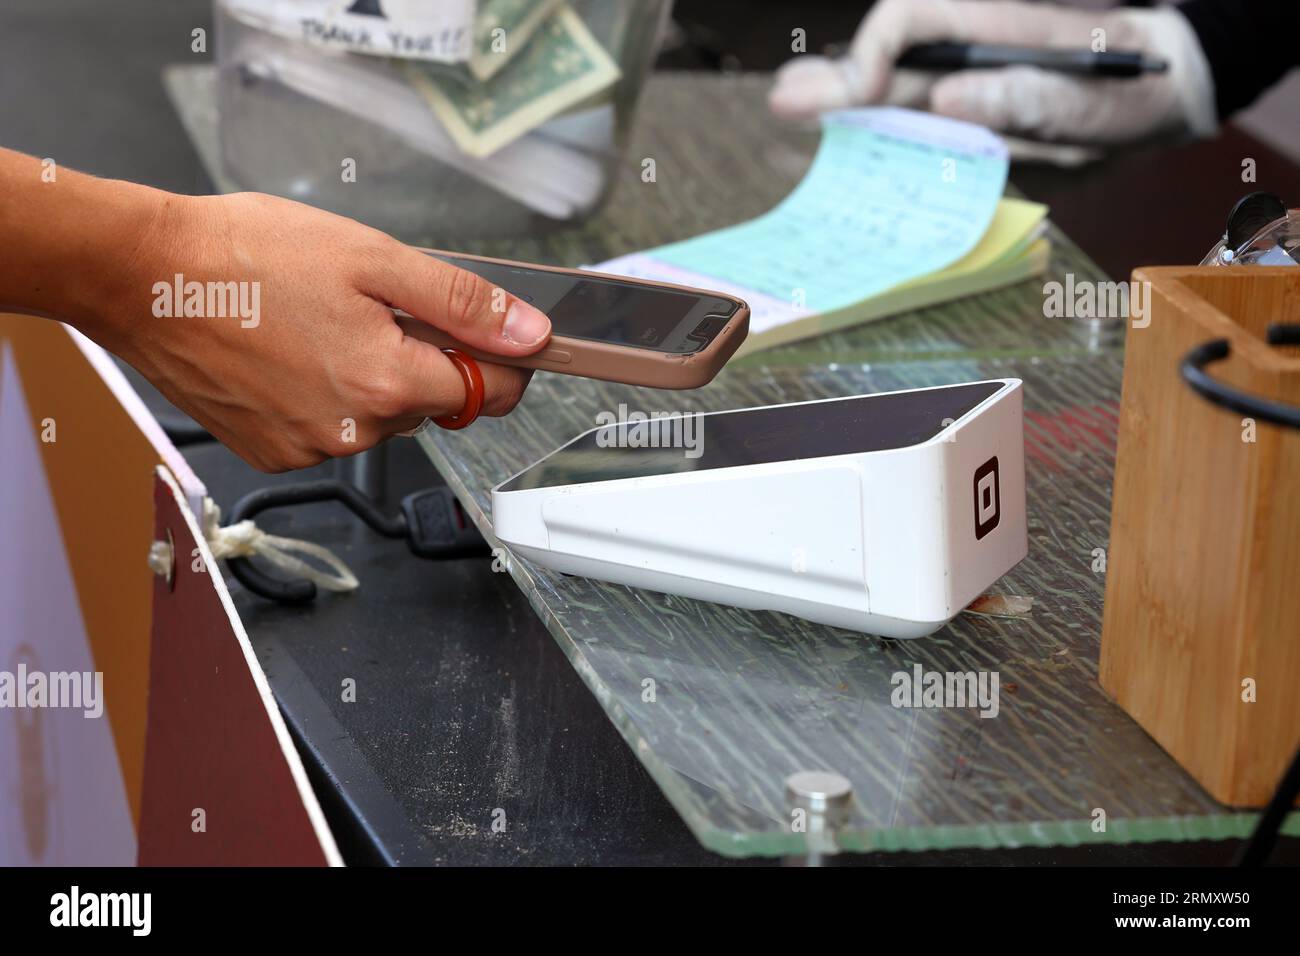 Une personne tient un smartphone sur un terminal de point de vente sans fil Square terminal pour effectuer un paiement mobile NFC, ou un paiement numérique sans contact. Banque D'Images